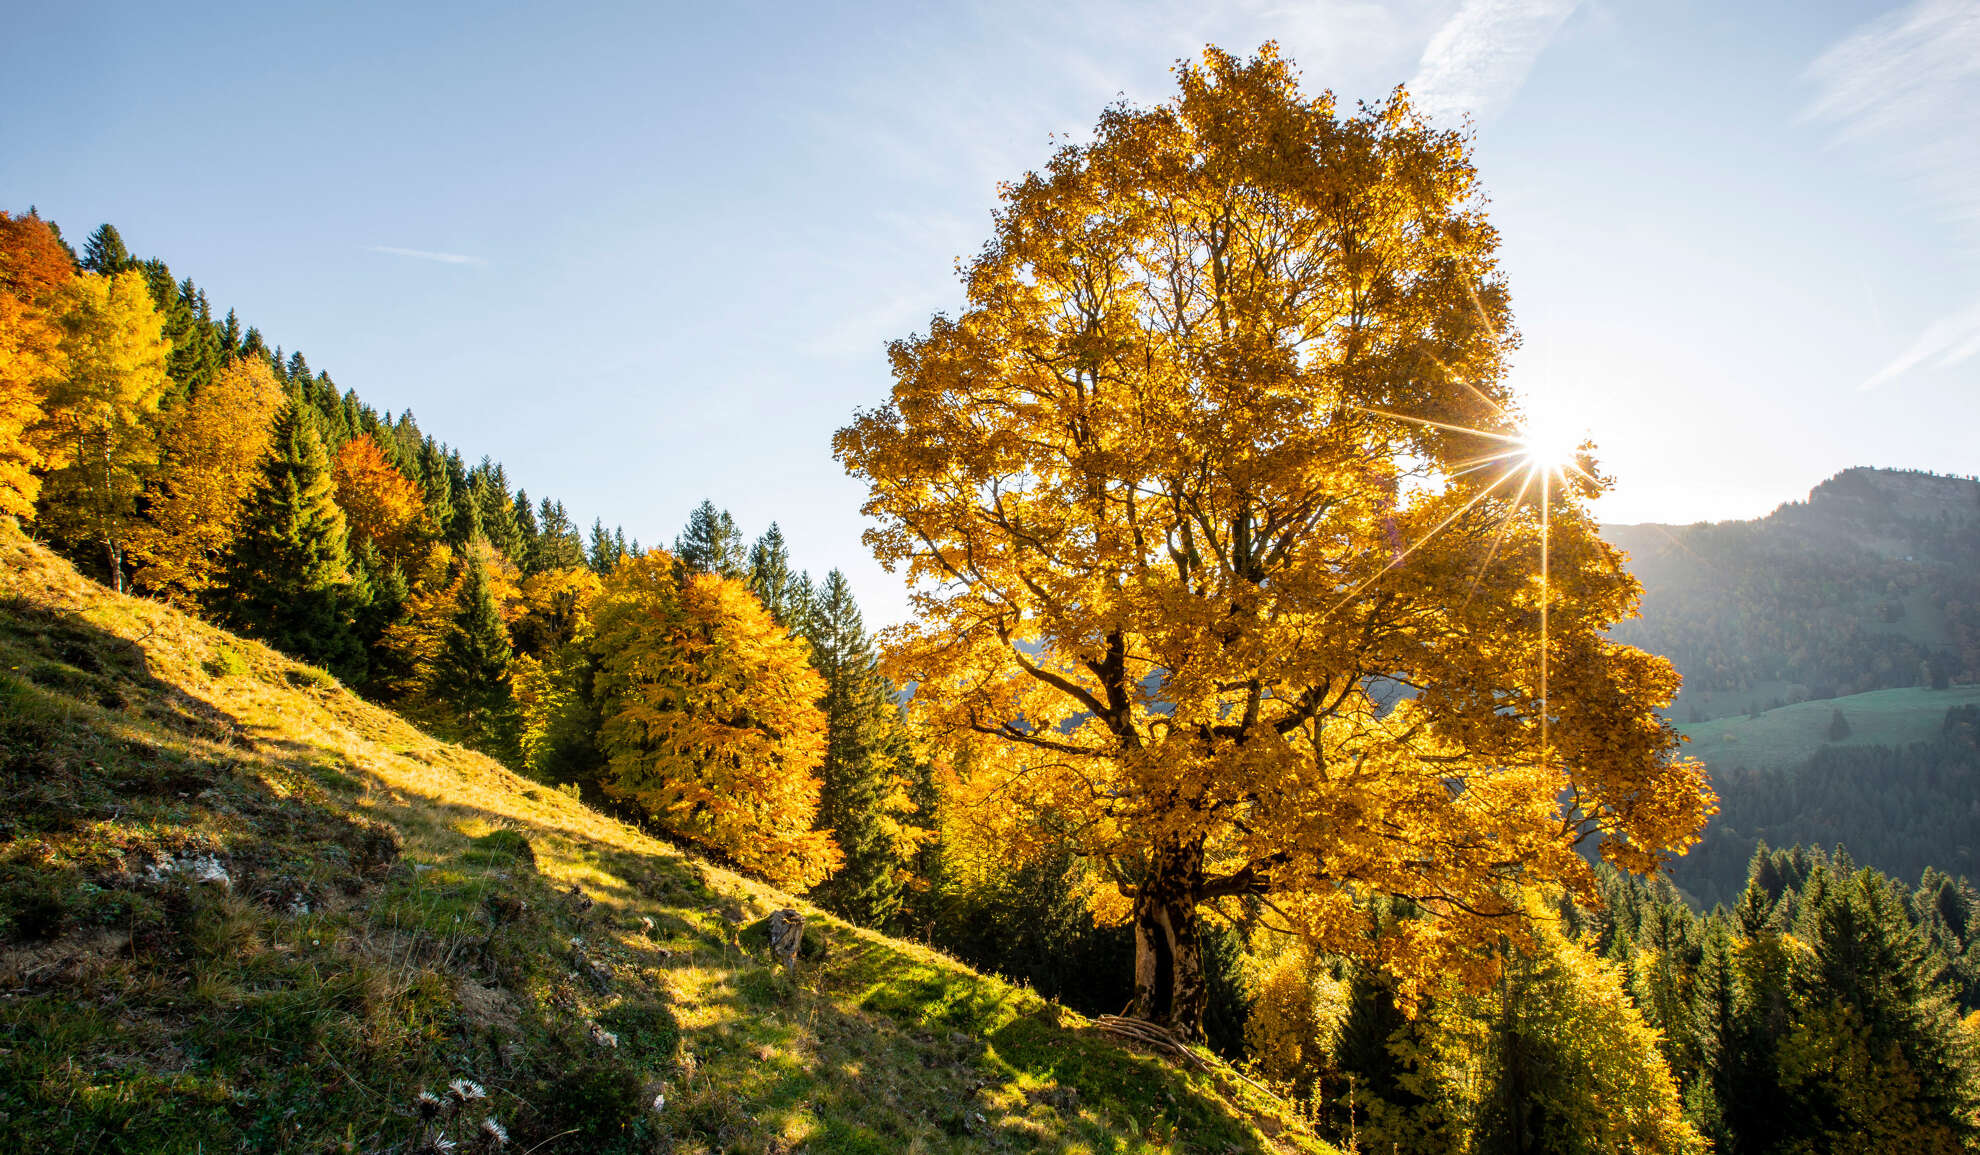 Wandere durch das goldene Blättermeer des Bergwaldes im Naturpark.